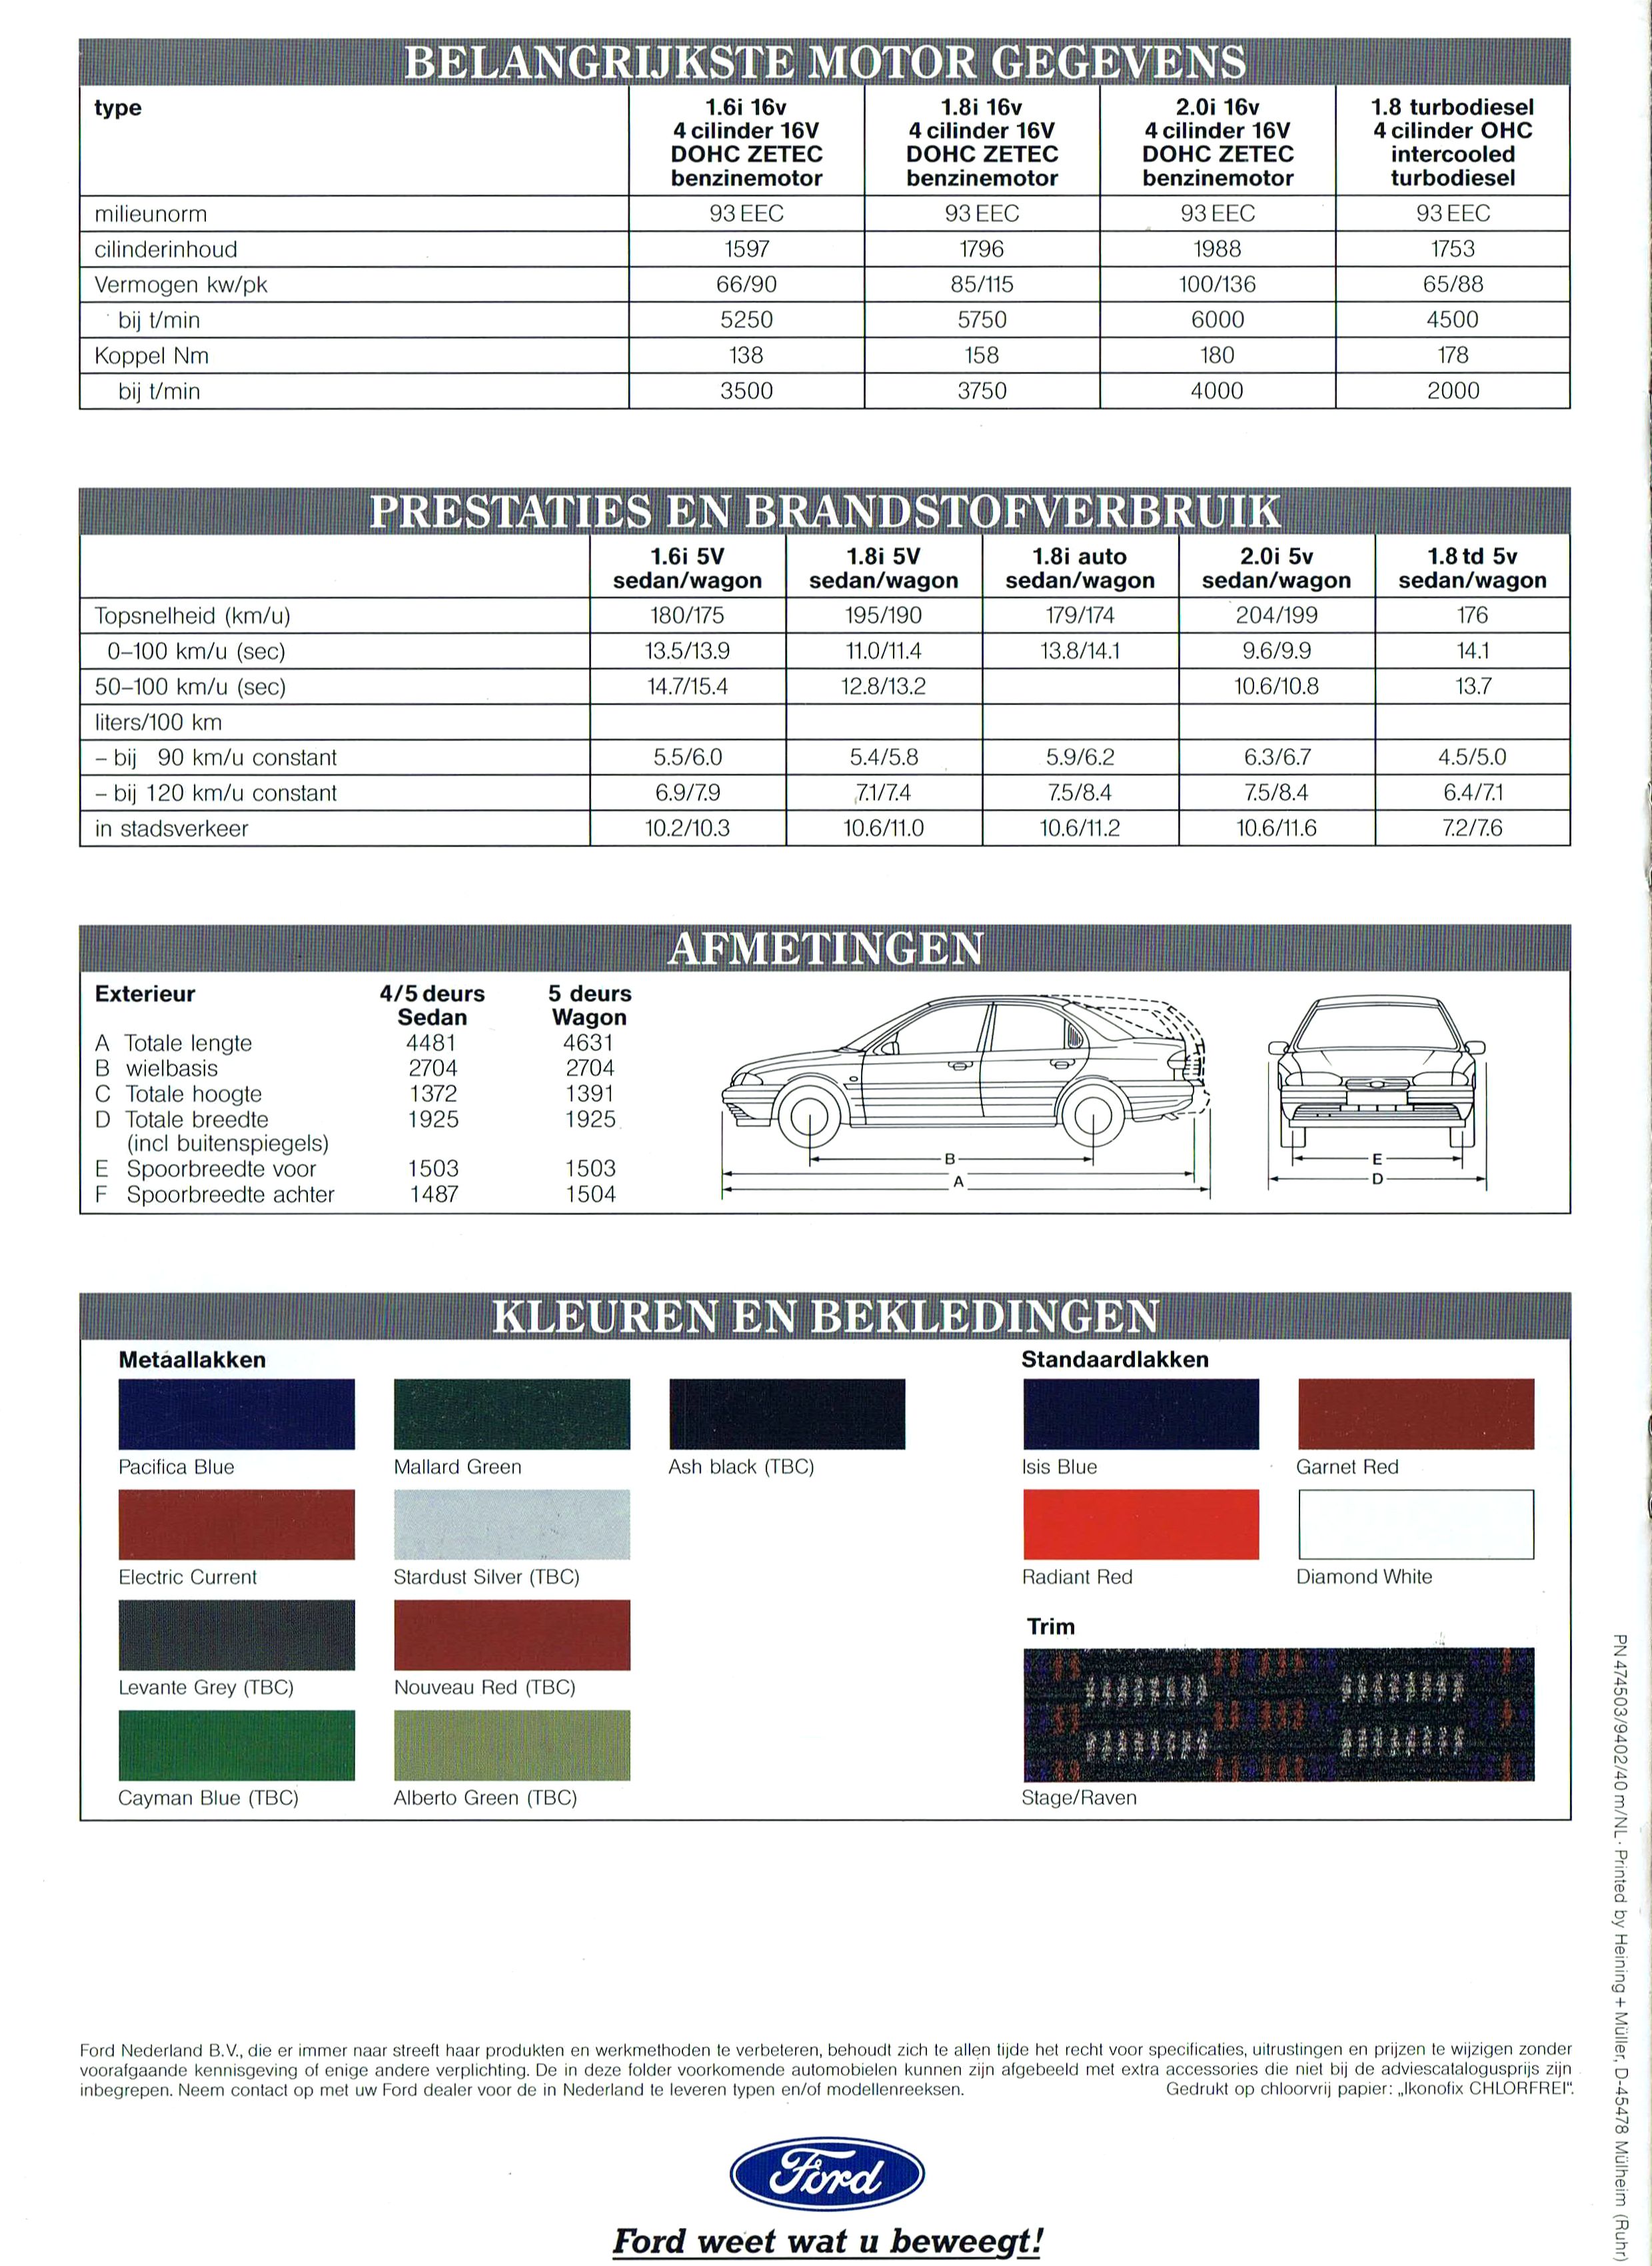 Ford Mondeo Limousine torneo CLX GLX Ghia folleto brochure lista de precios 1994 